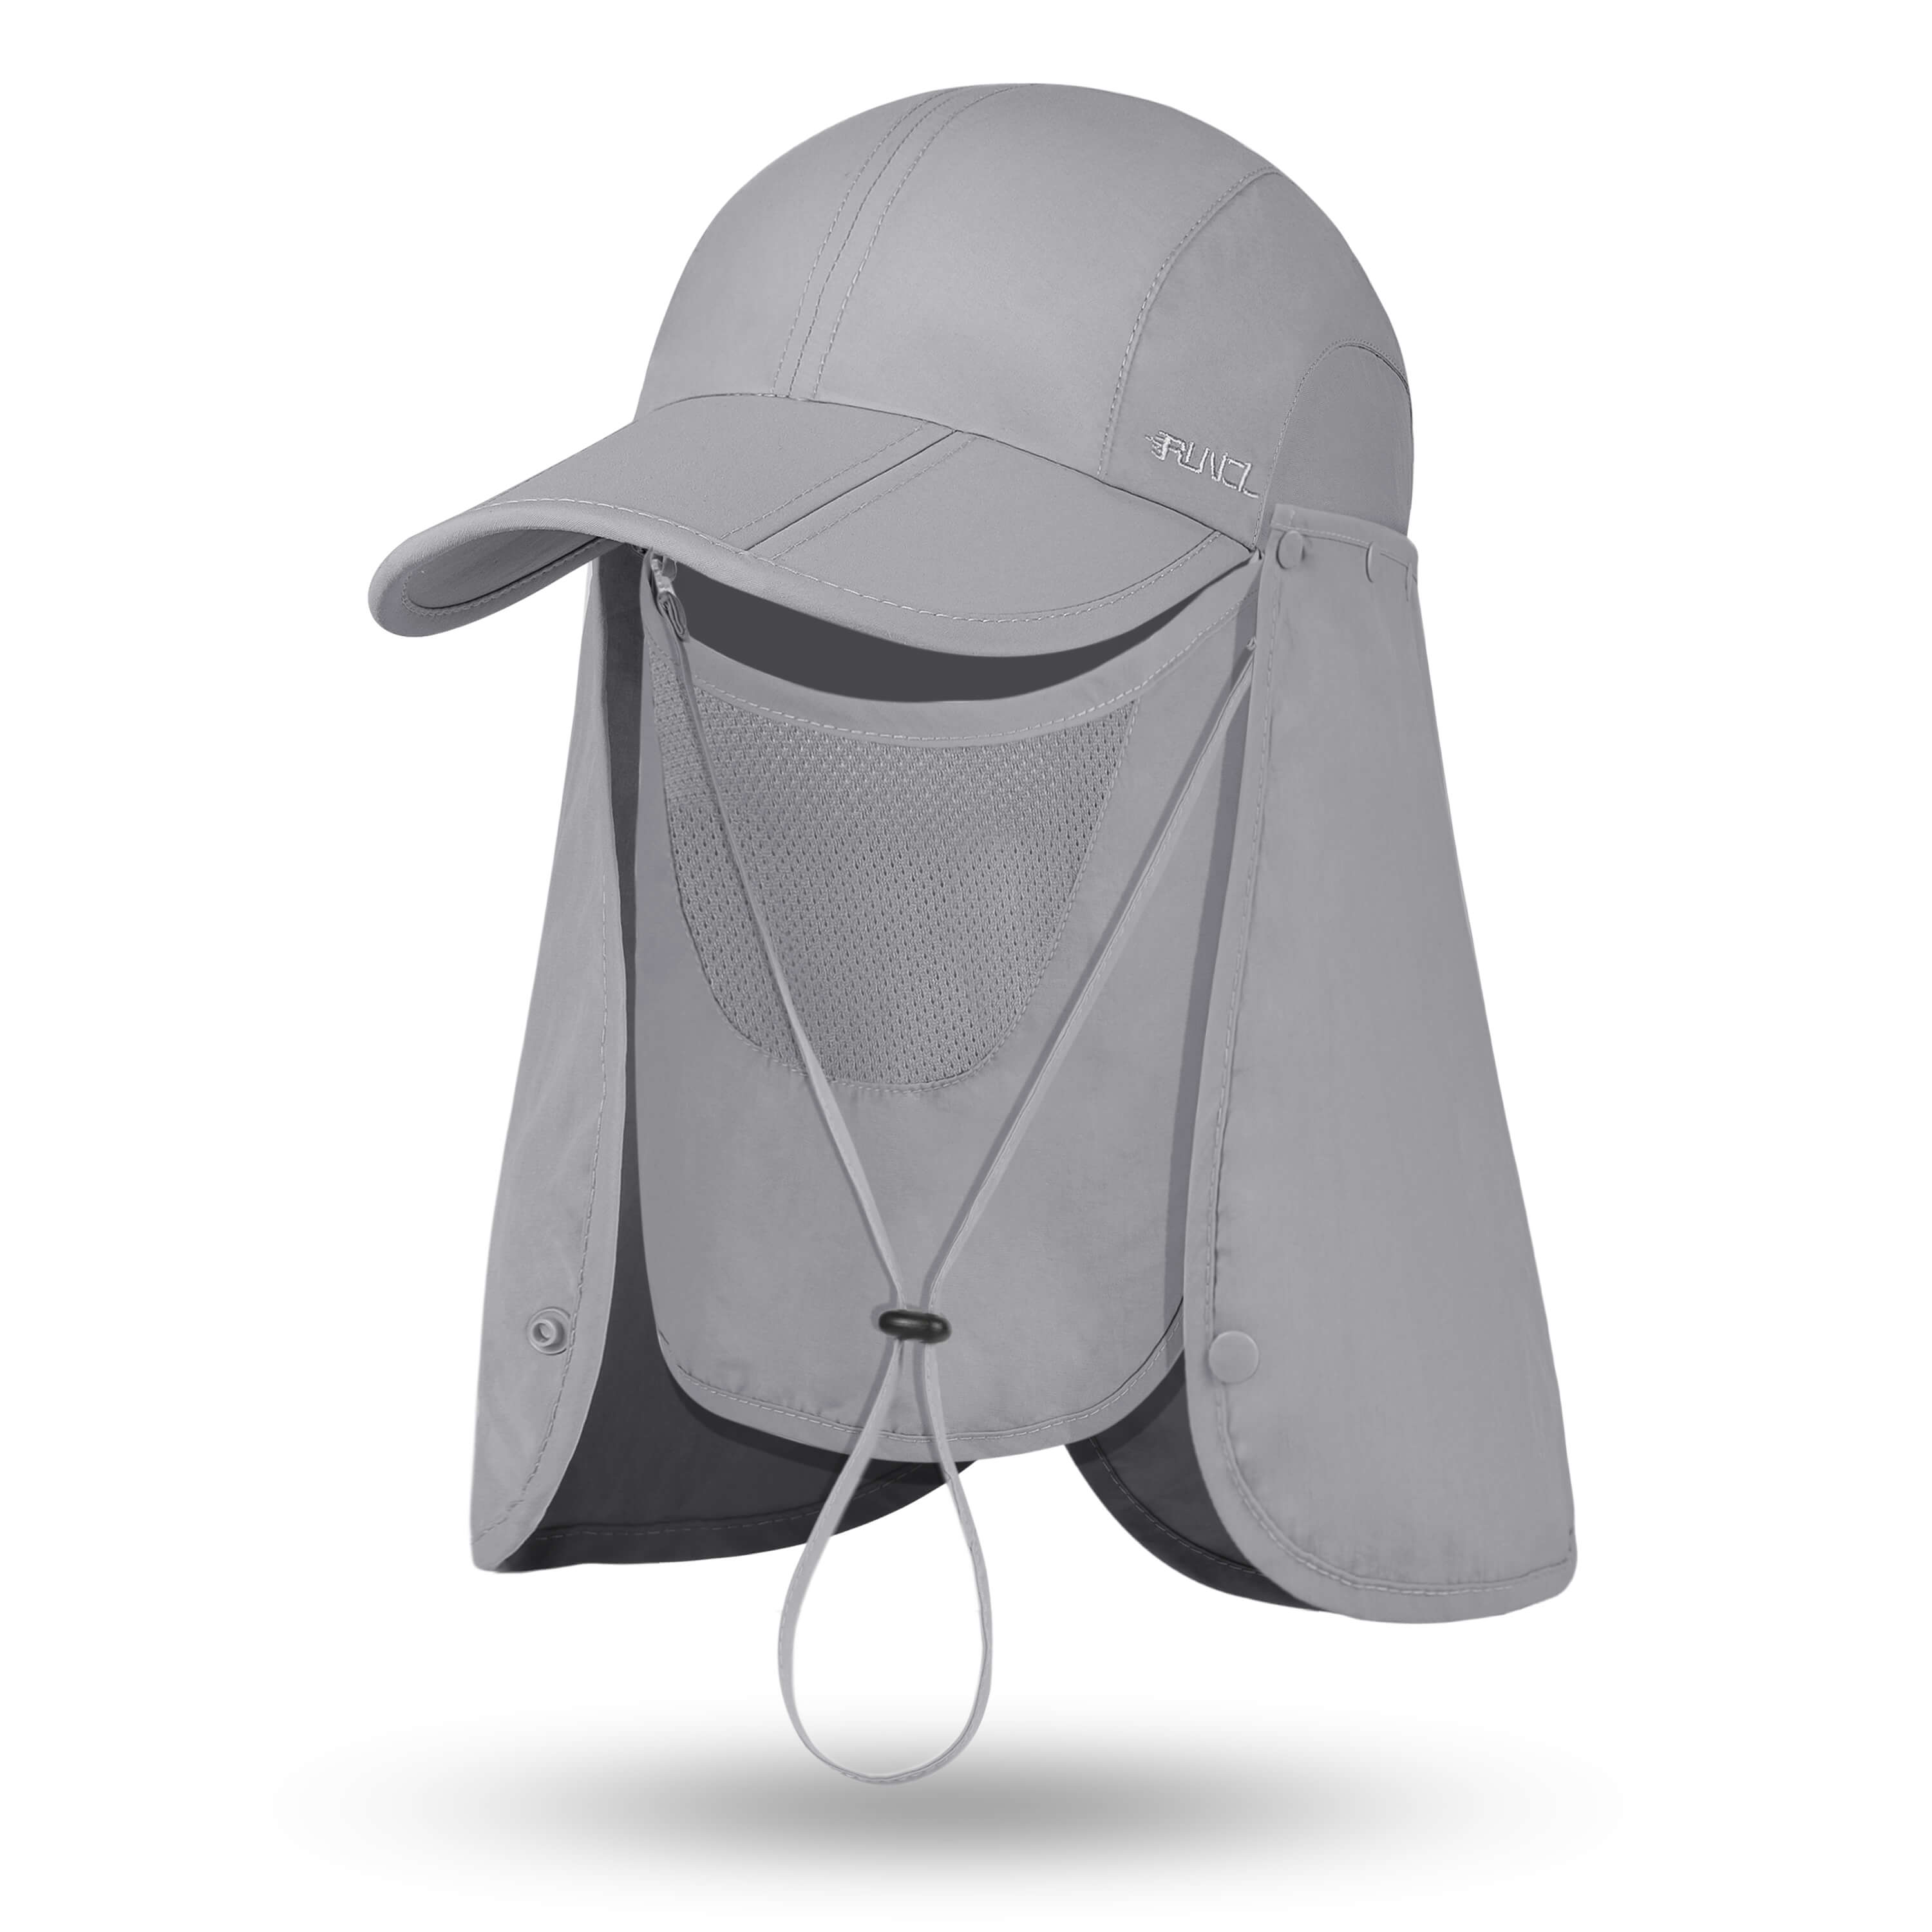 RUNCL UV Sun Protection Hat – Runcl